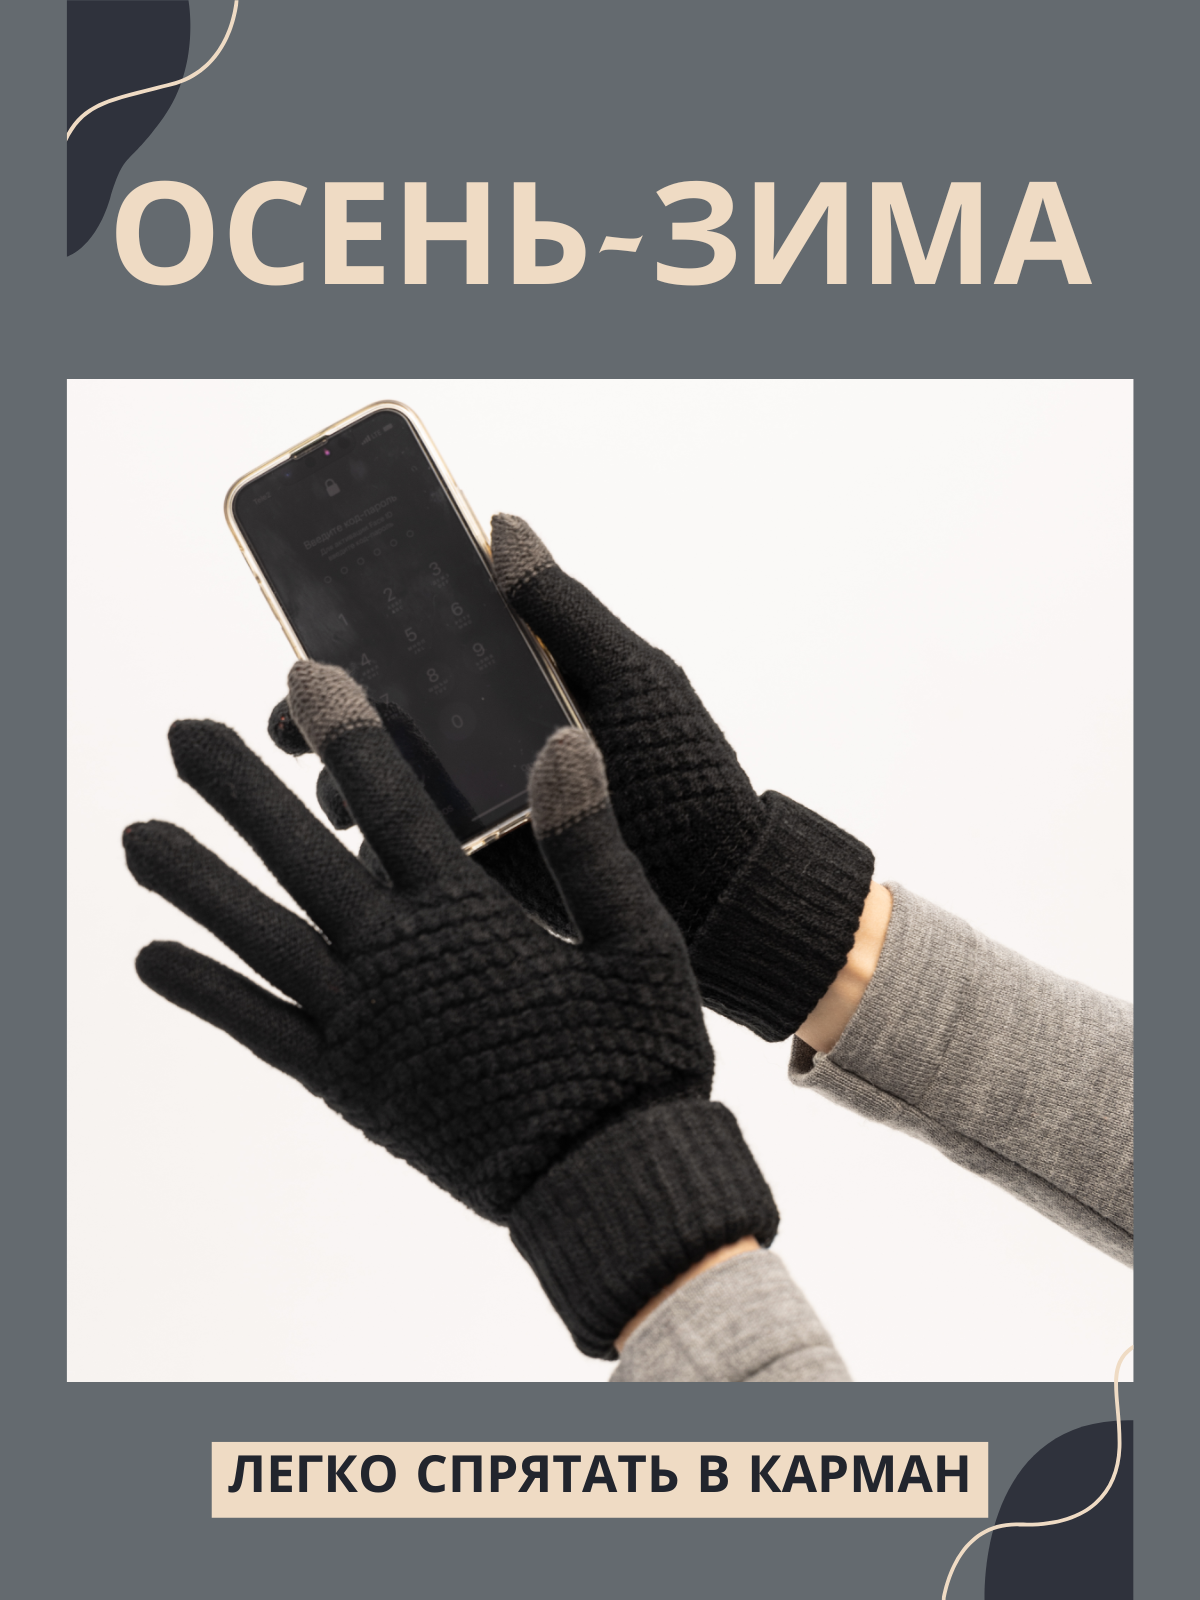 Перчатки черный 